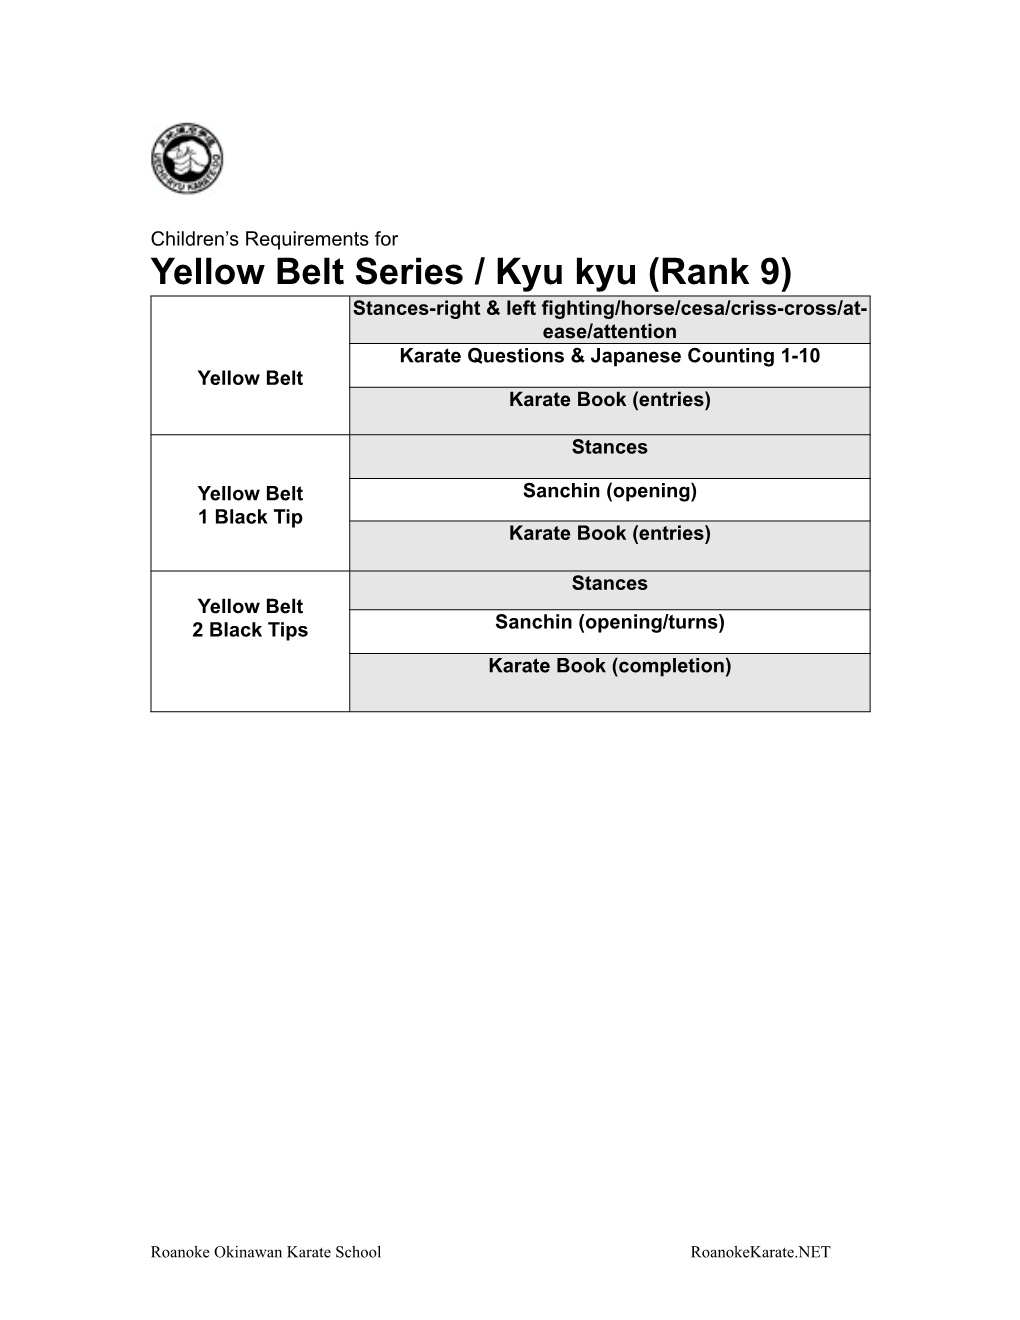 Yellow Belt Series / Kyu Kyu (Rank 9)